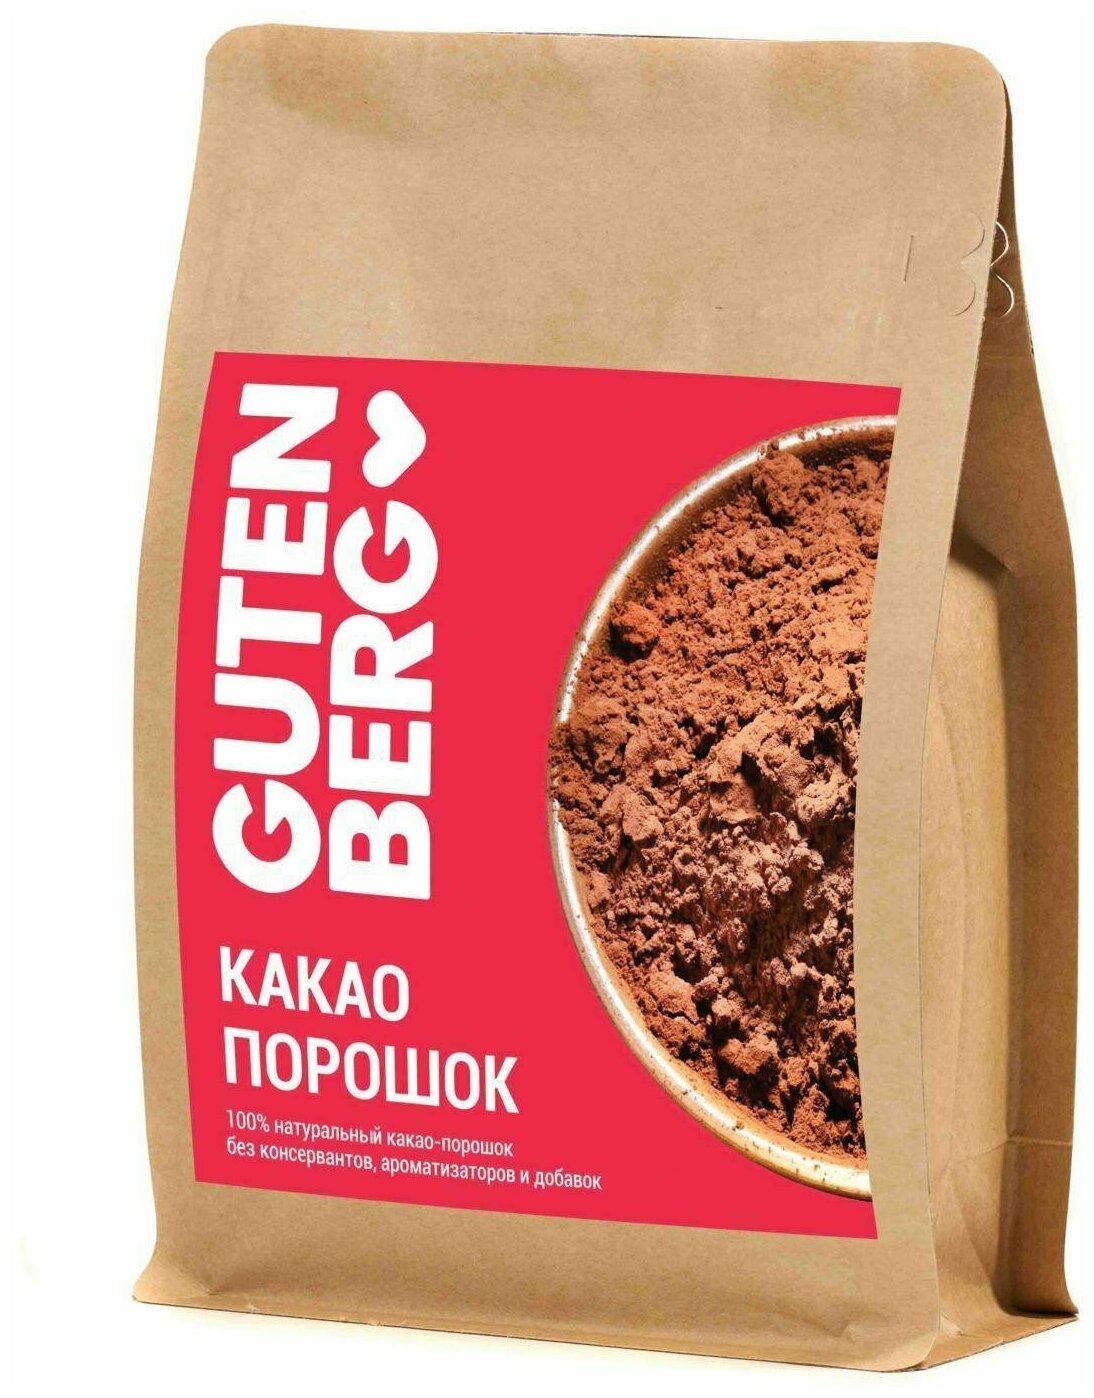 100% натуральный какао-порошок Gutenberg. Без консервантов ГМО ароматизаторов и добавок. уп. 200 г